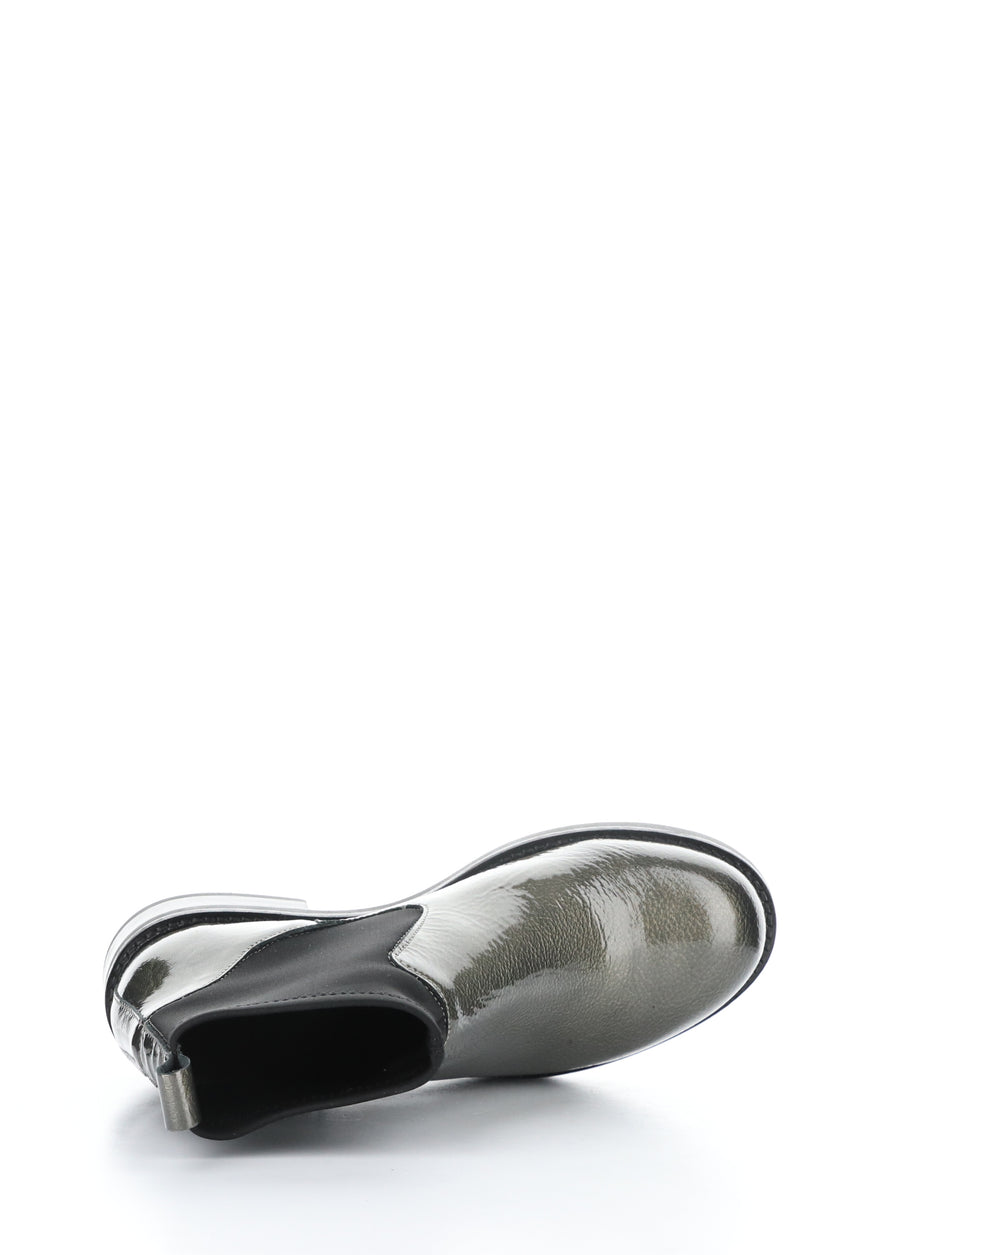 NOEL PEWTER/BLACK Elasticated Boots